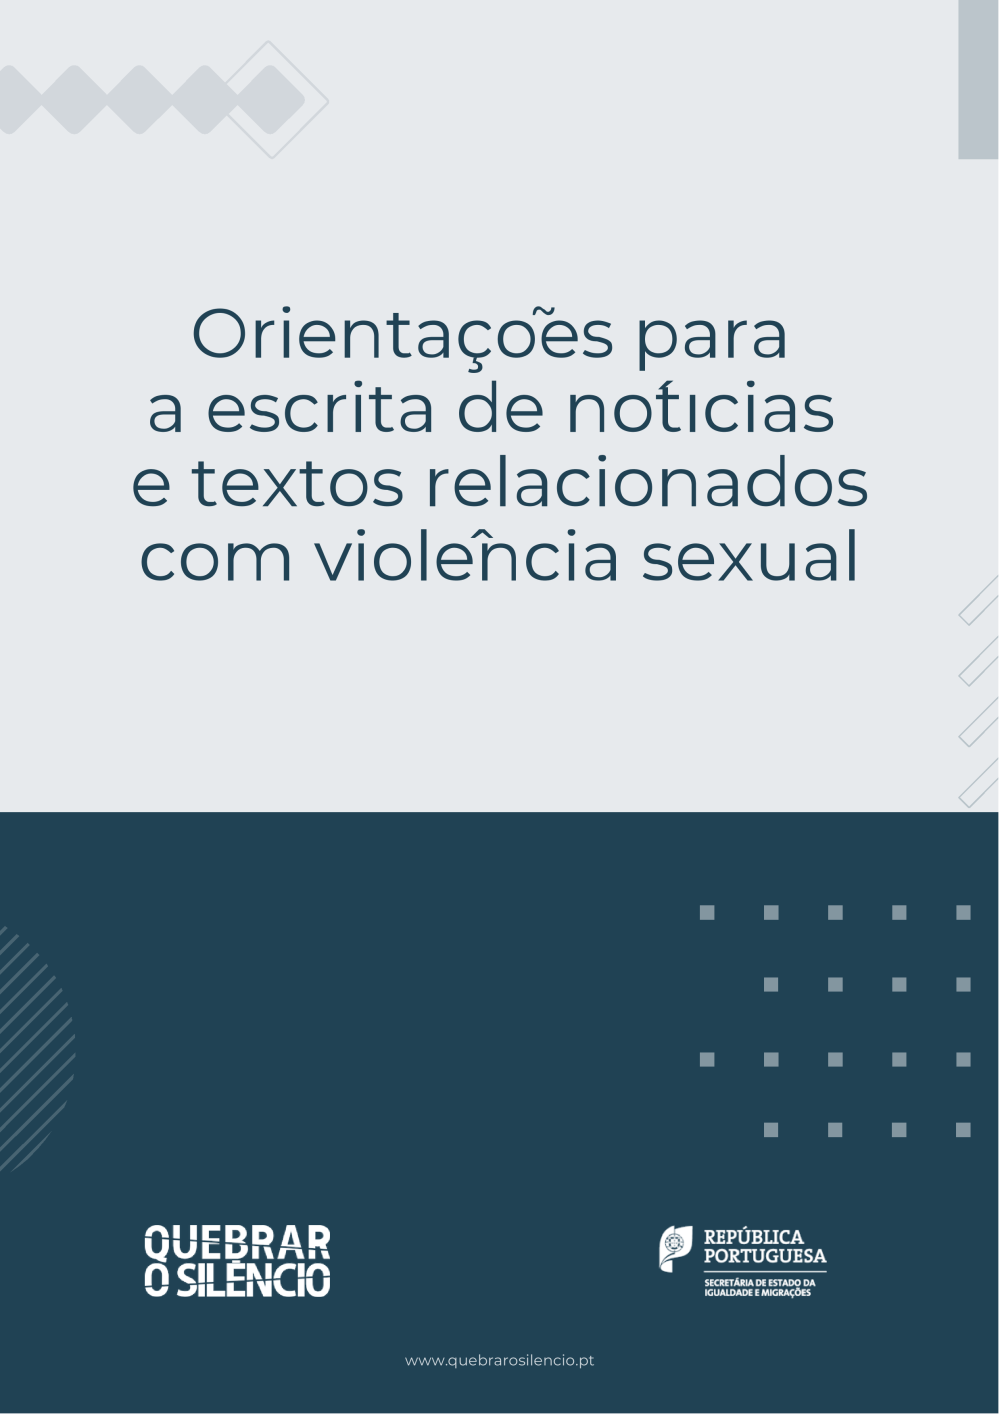 Orientações para escrita de notícias e textos relacionados com violência sexual